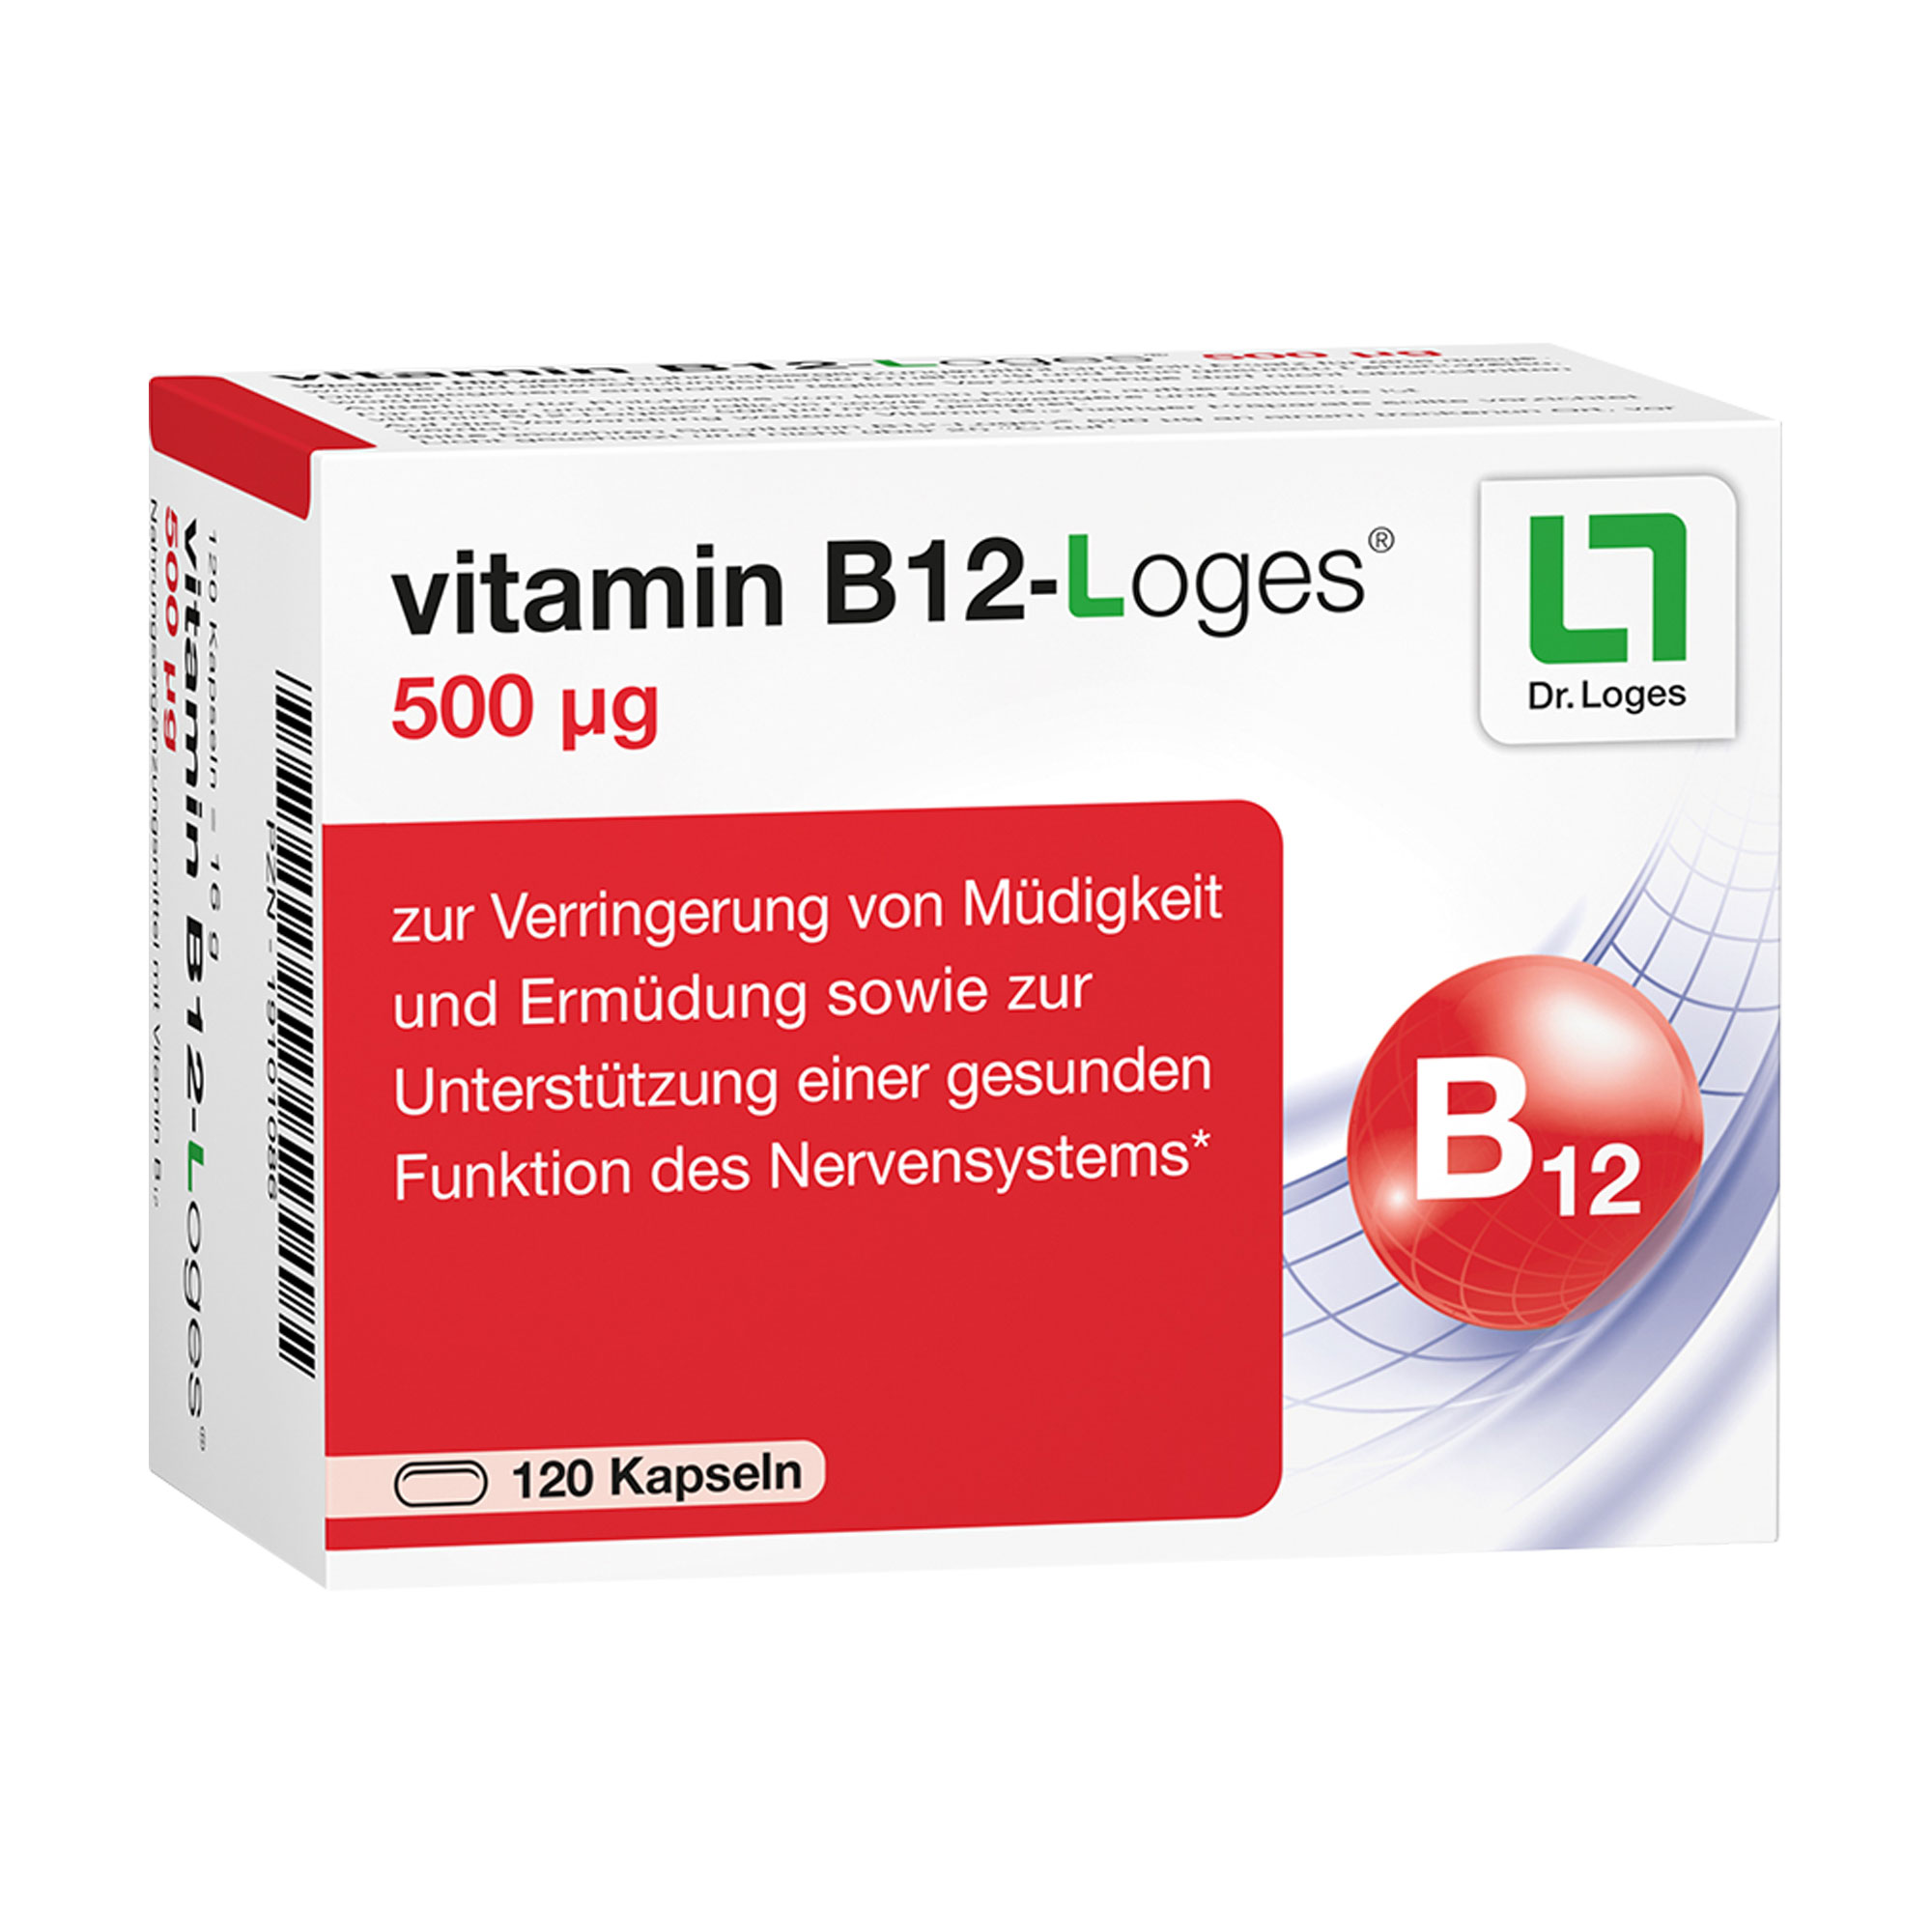 Nahrungsergänzungsmittel zur gezielten Versorgung mit Vitamin B12.